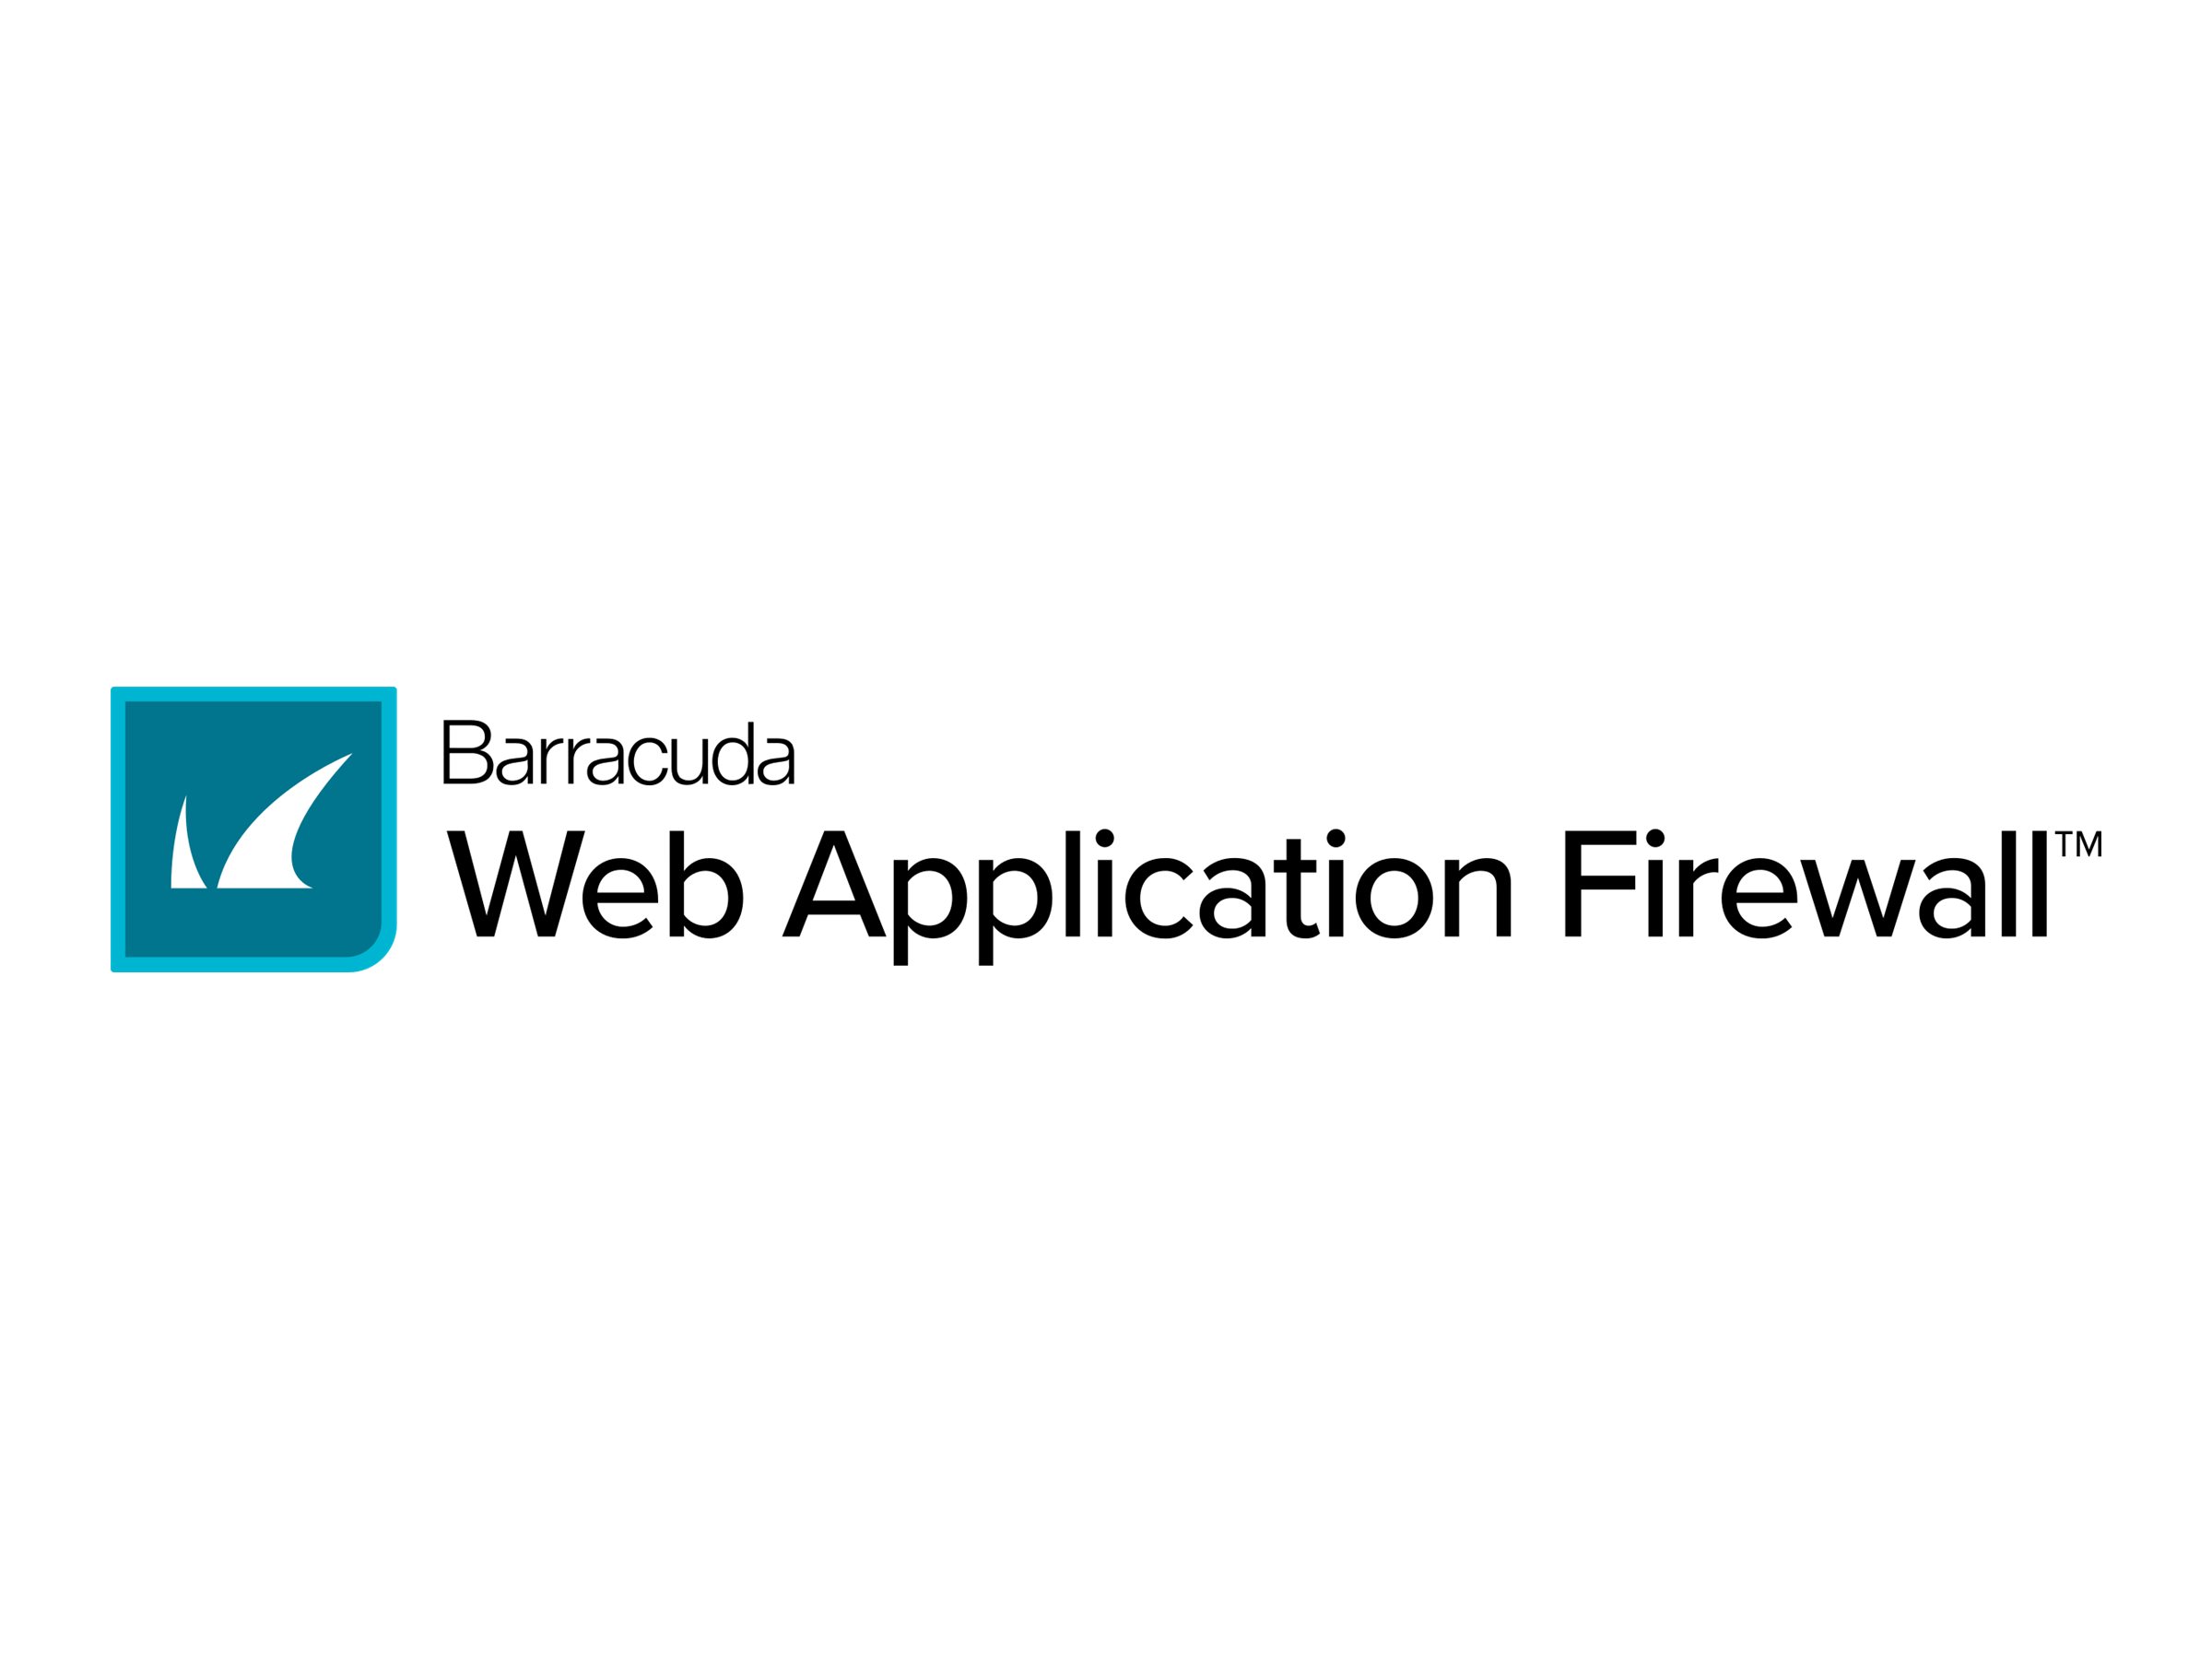 Barracuda Web Application Firewall for Windows Azure level 15